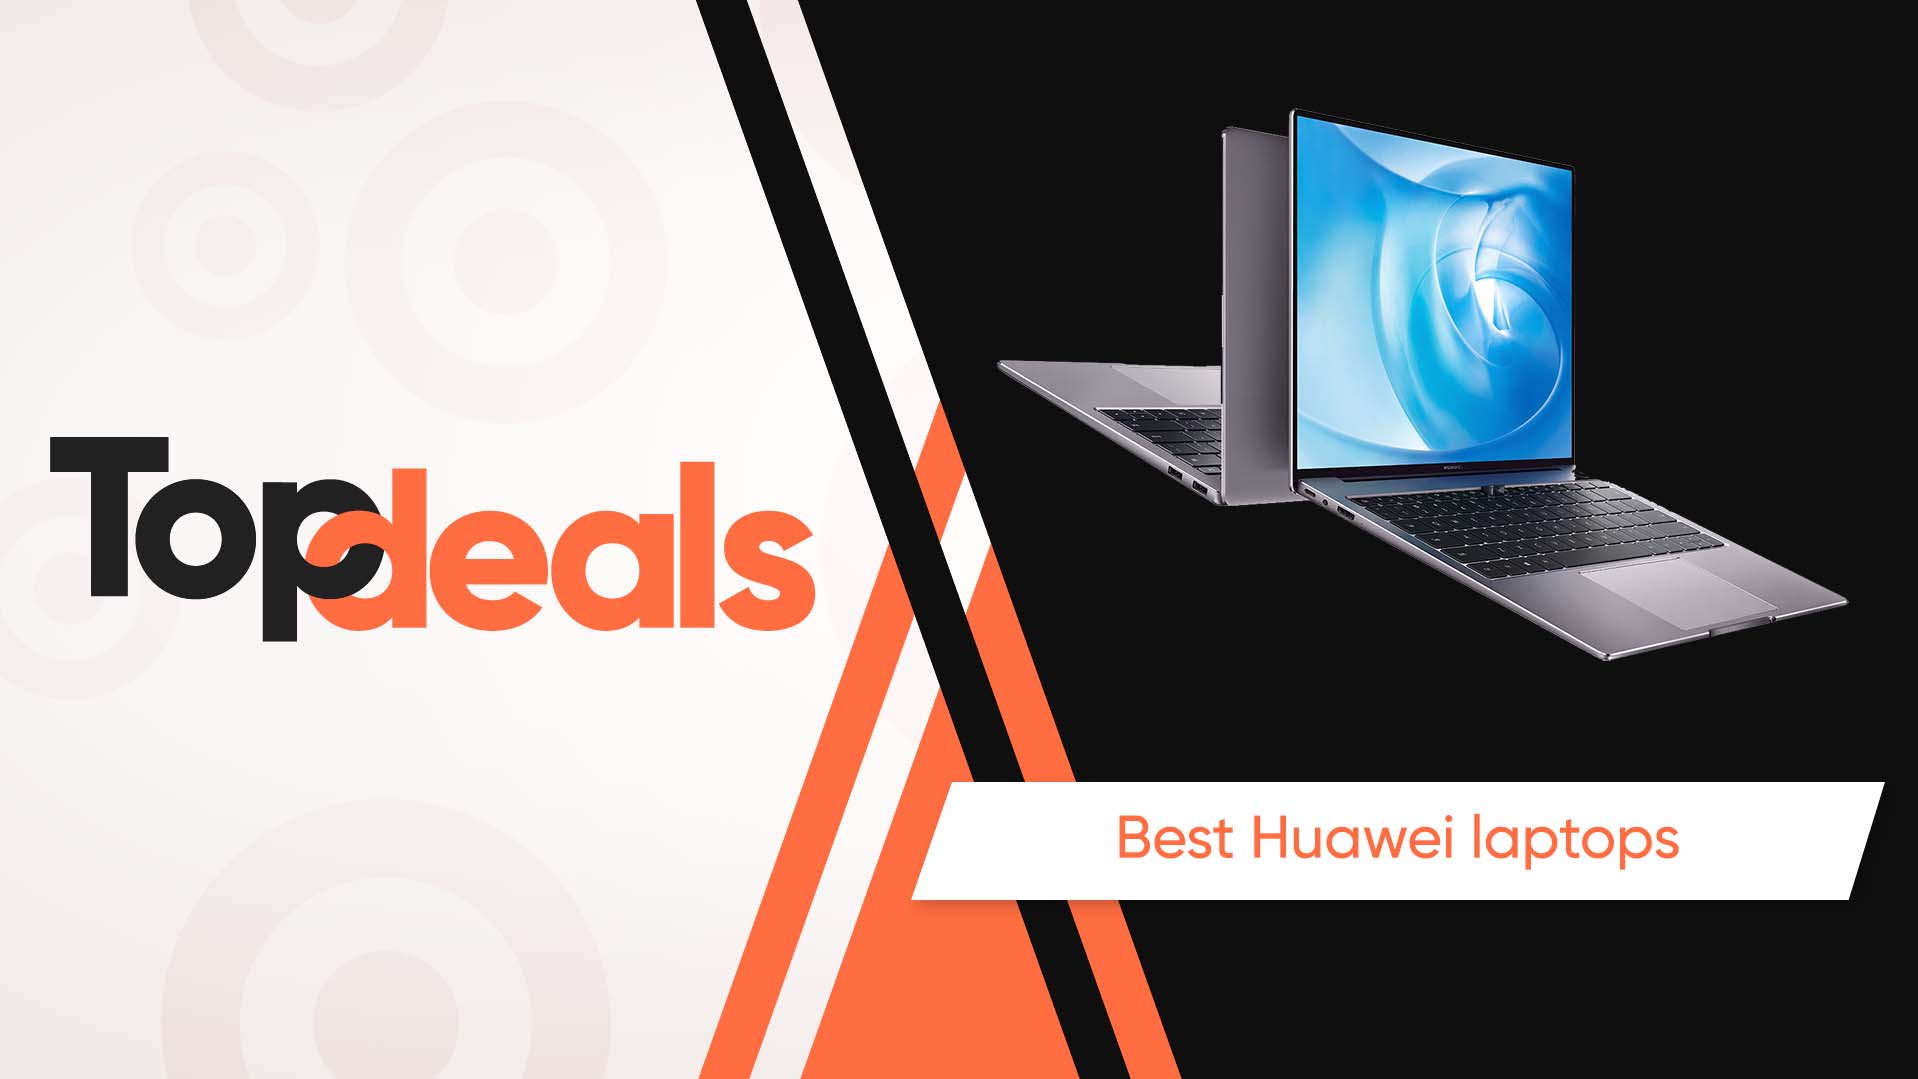 Best Huawei laptops